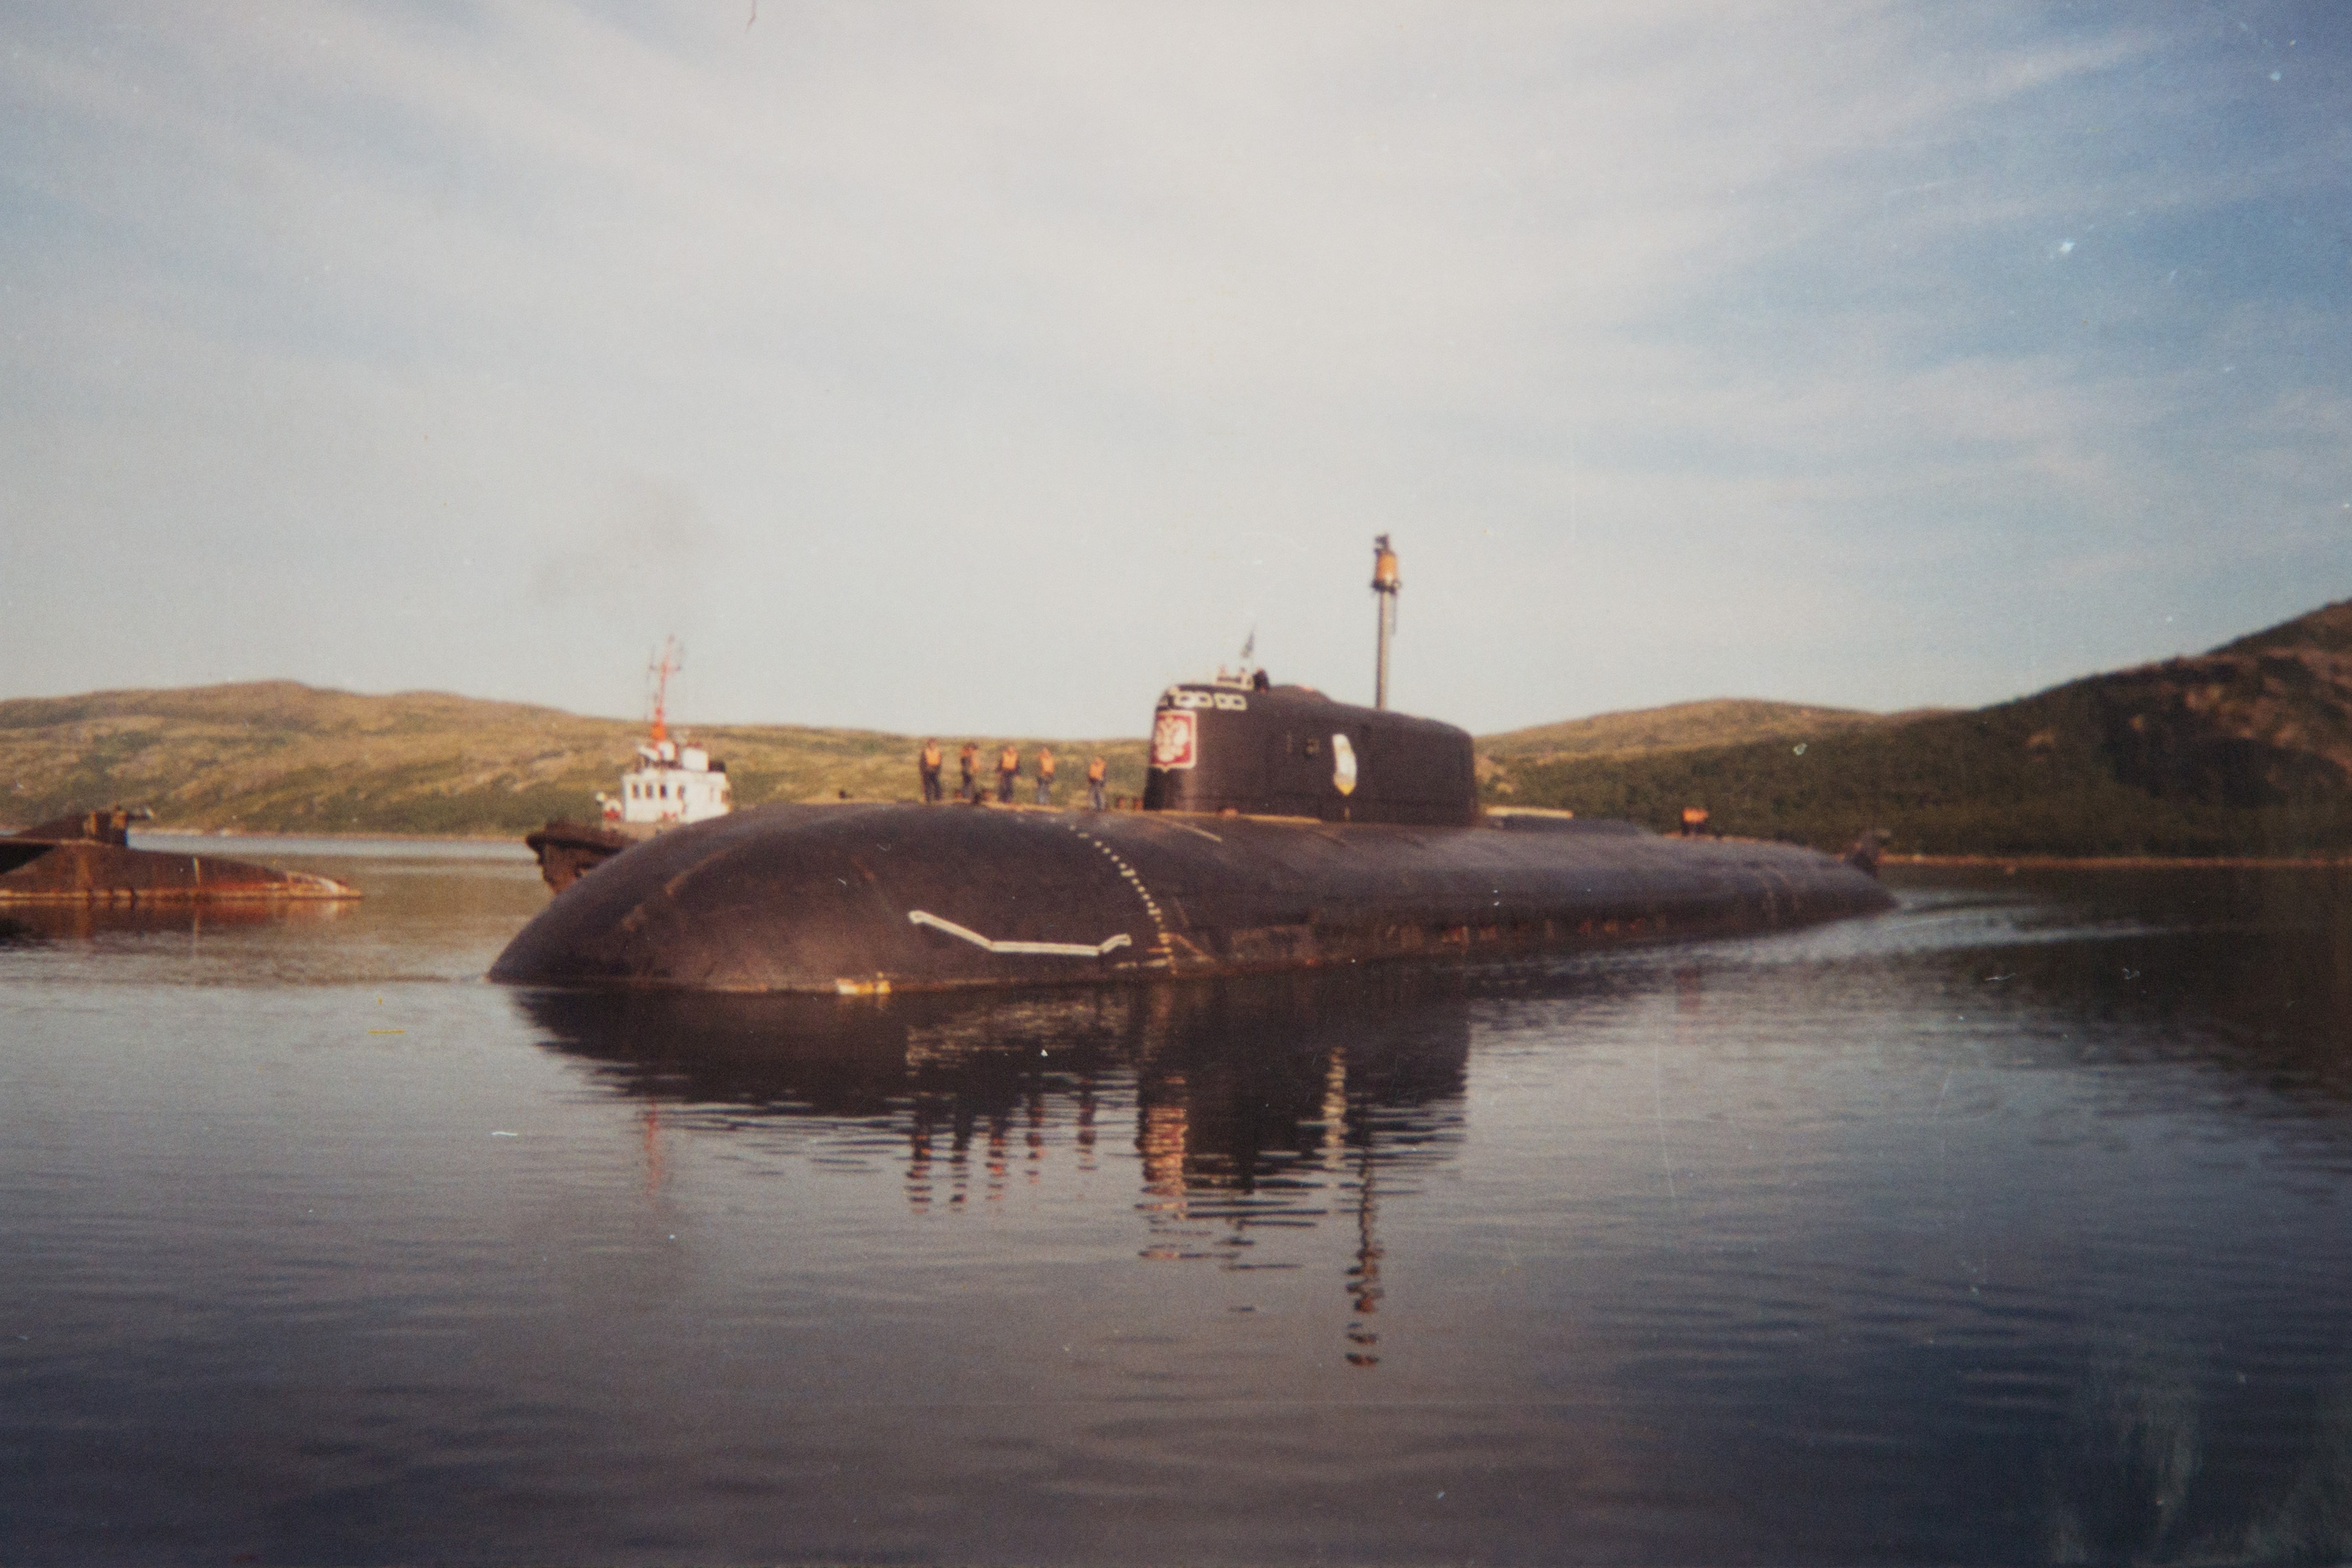 Подводная лодка сколько погибло. Подводная лодка к-141 «Курск». Атомная подводная лодка Курск. Курск подводная лодка катастрофа. К-141 «Курск».